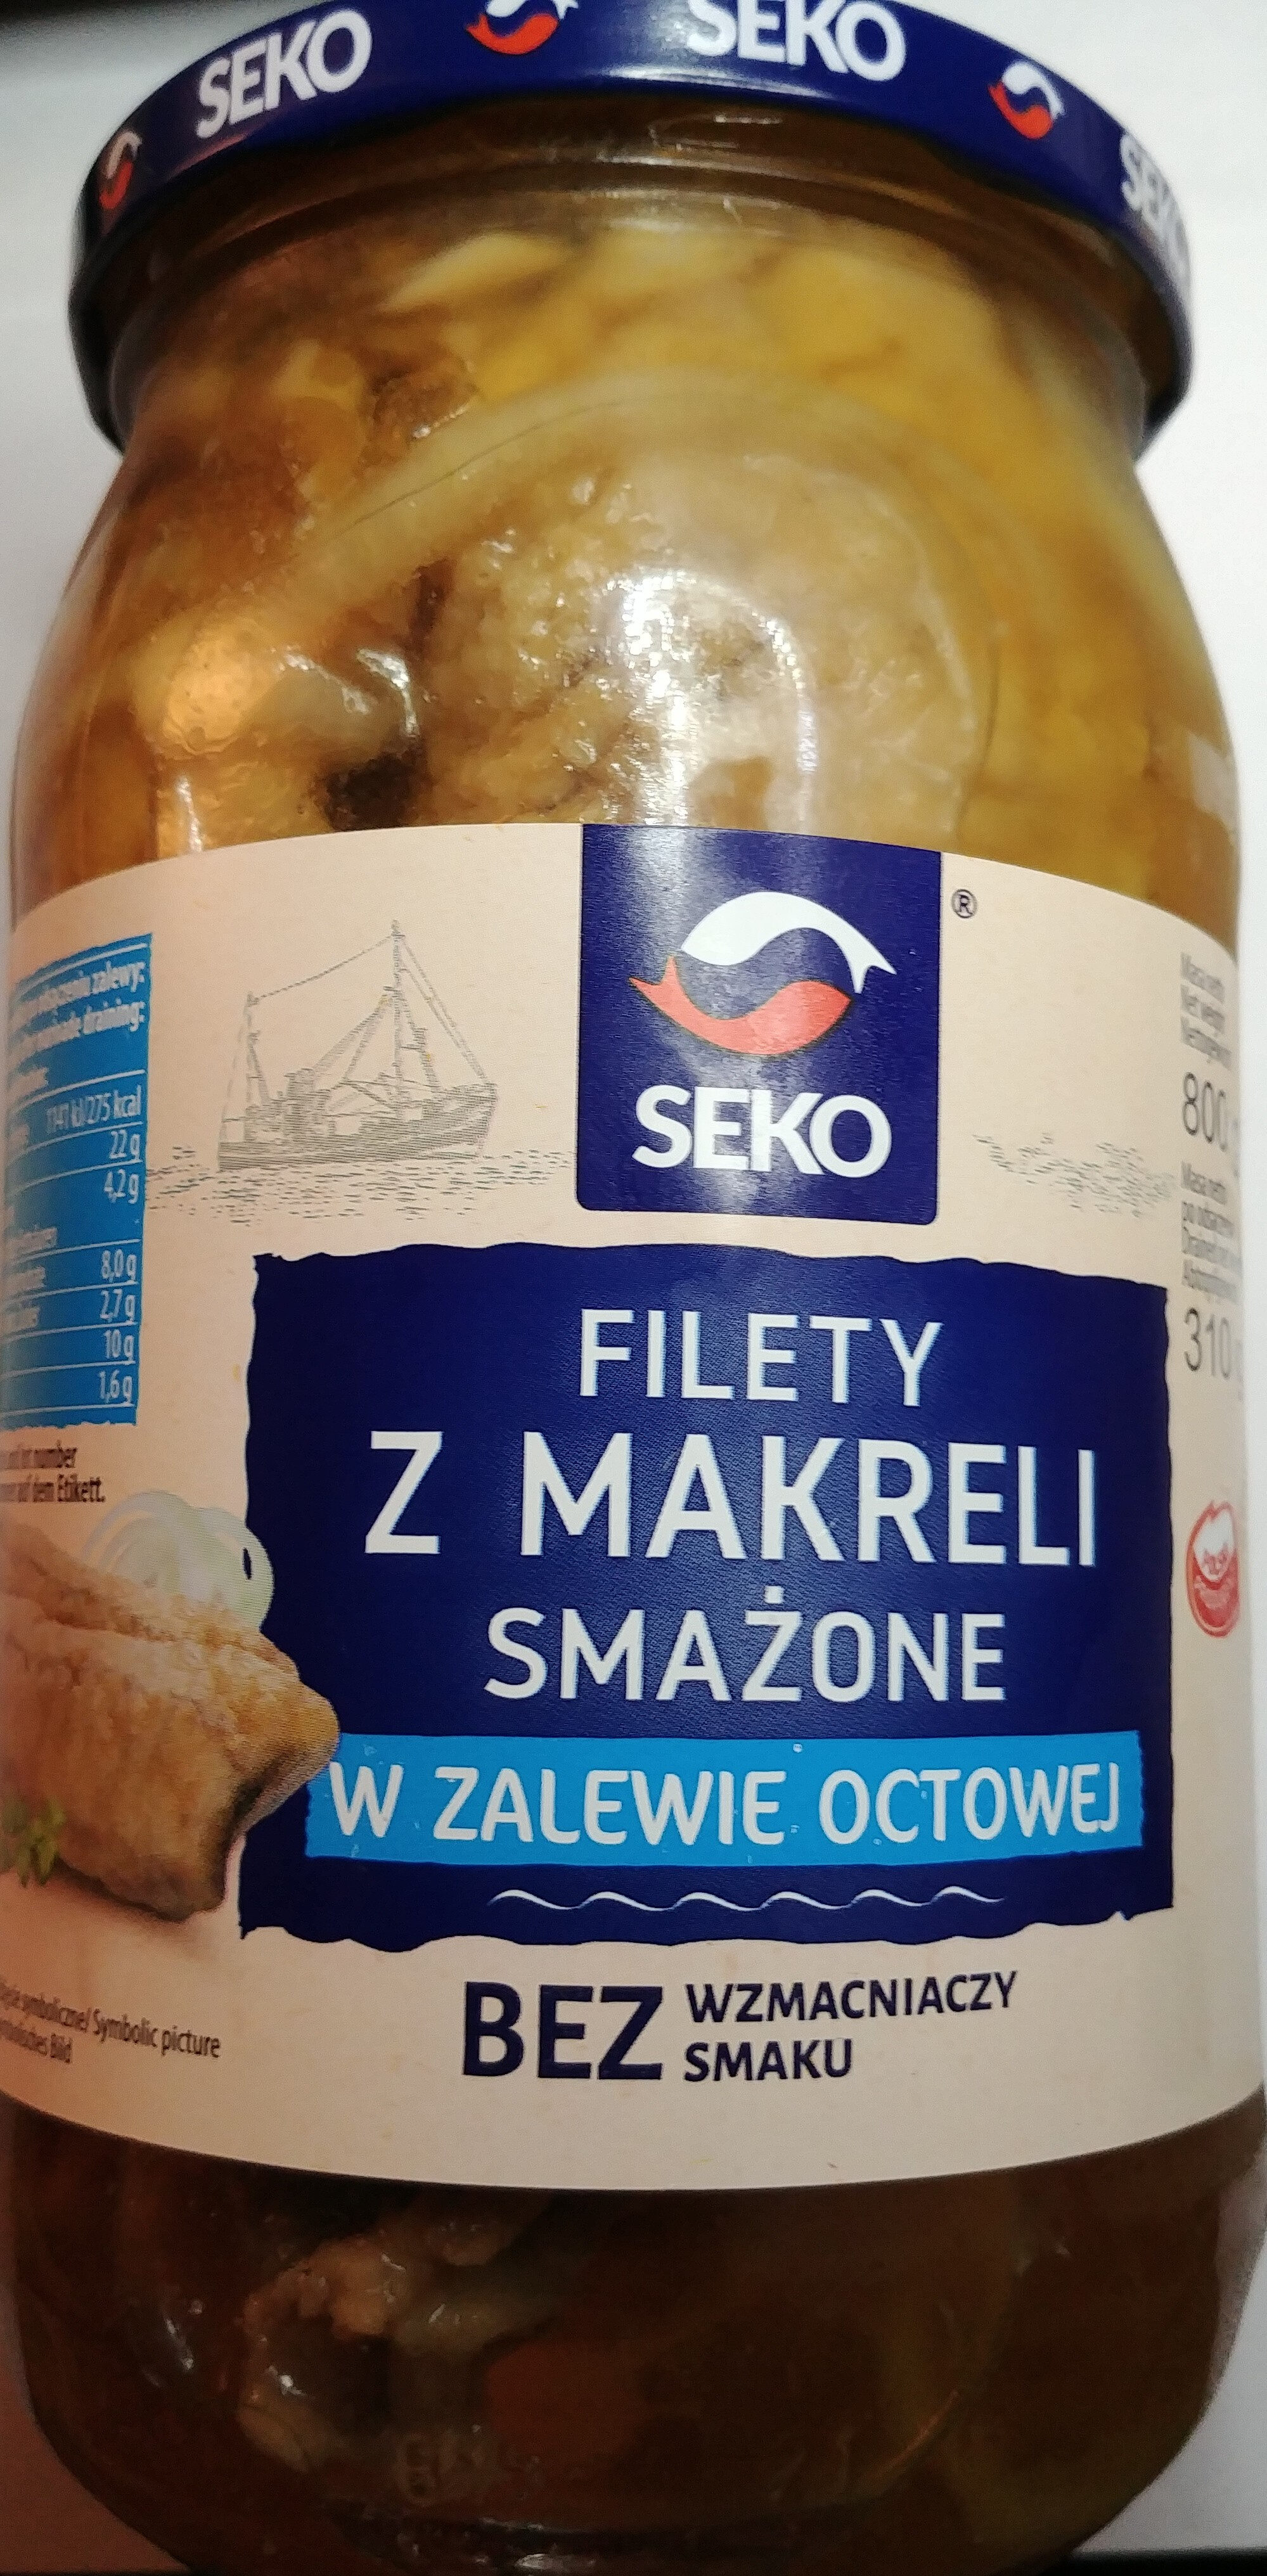 Filety z makreli smażone w zalewie octowej - Product - pl